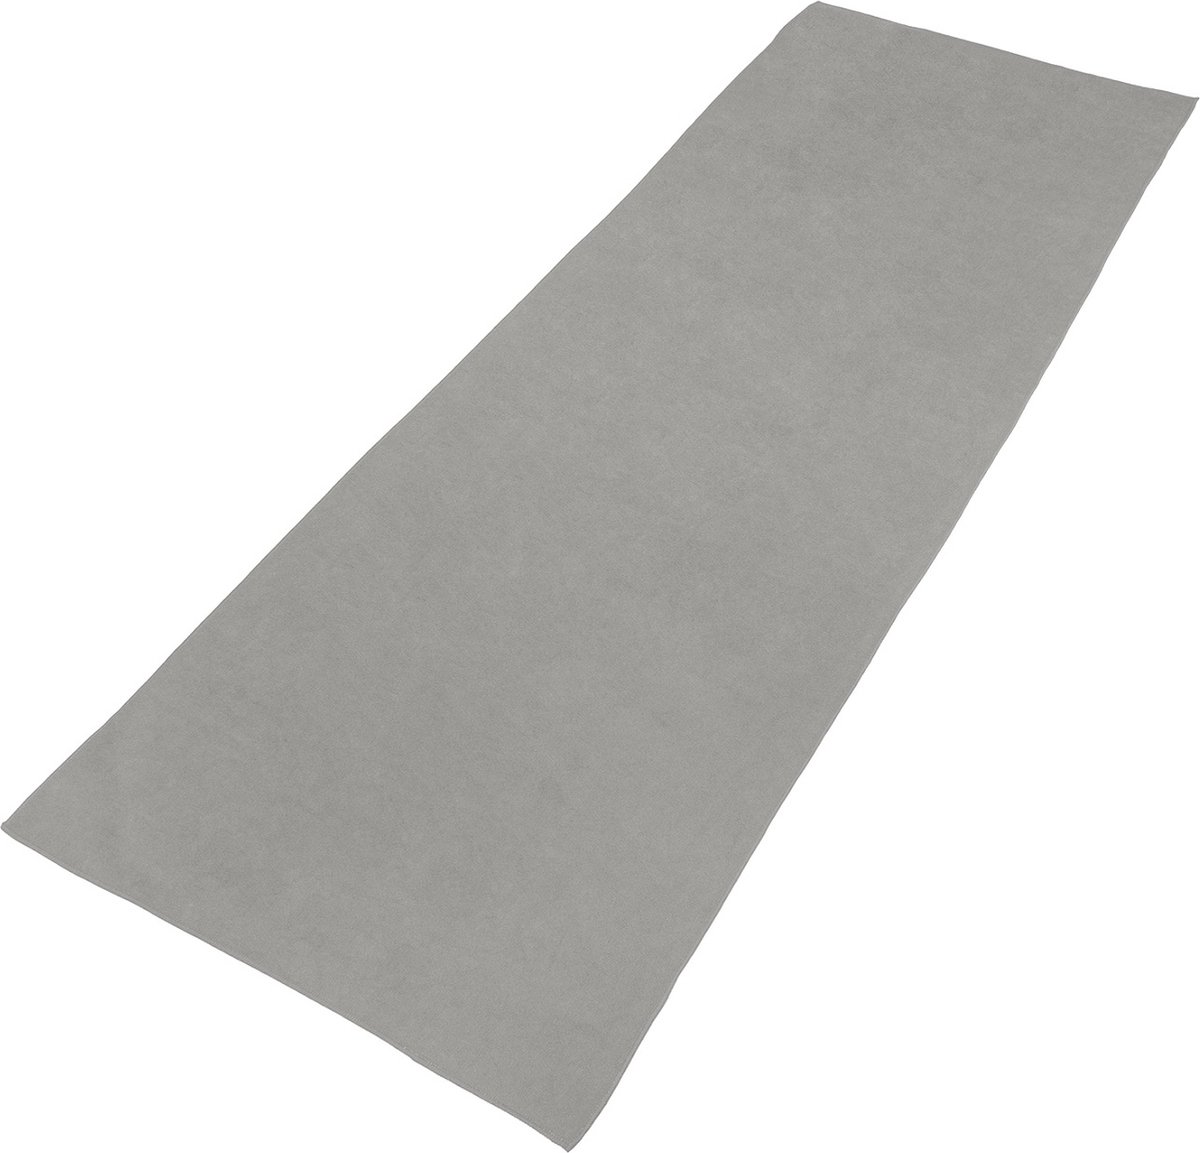 VirtuFit Premium Yoga Mat Handdoek- Anti-slip - Extra dik (6 mm) - 183 x 61 x 0,6 cm - Natural Grey